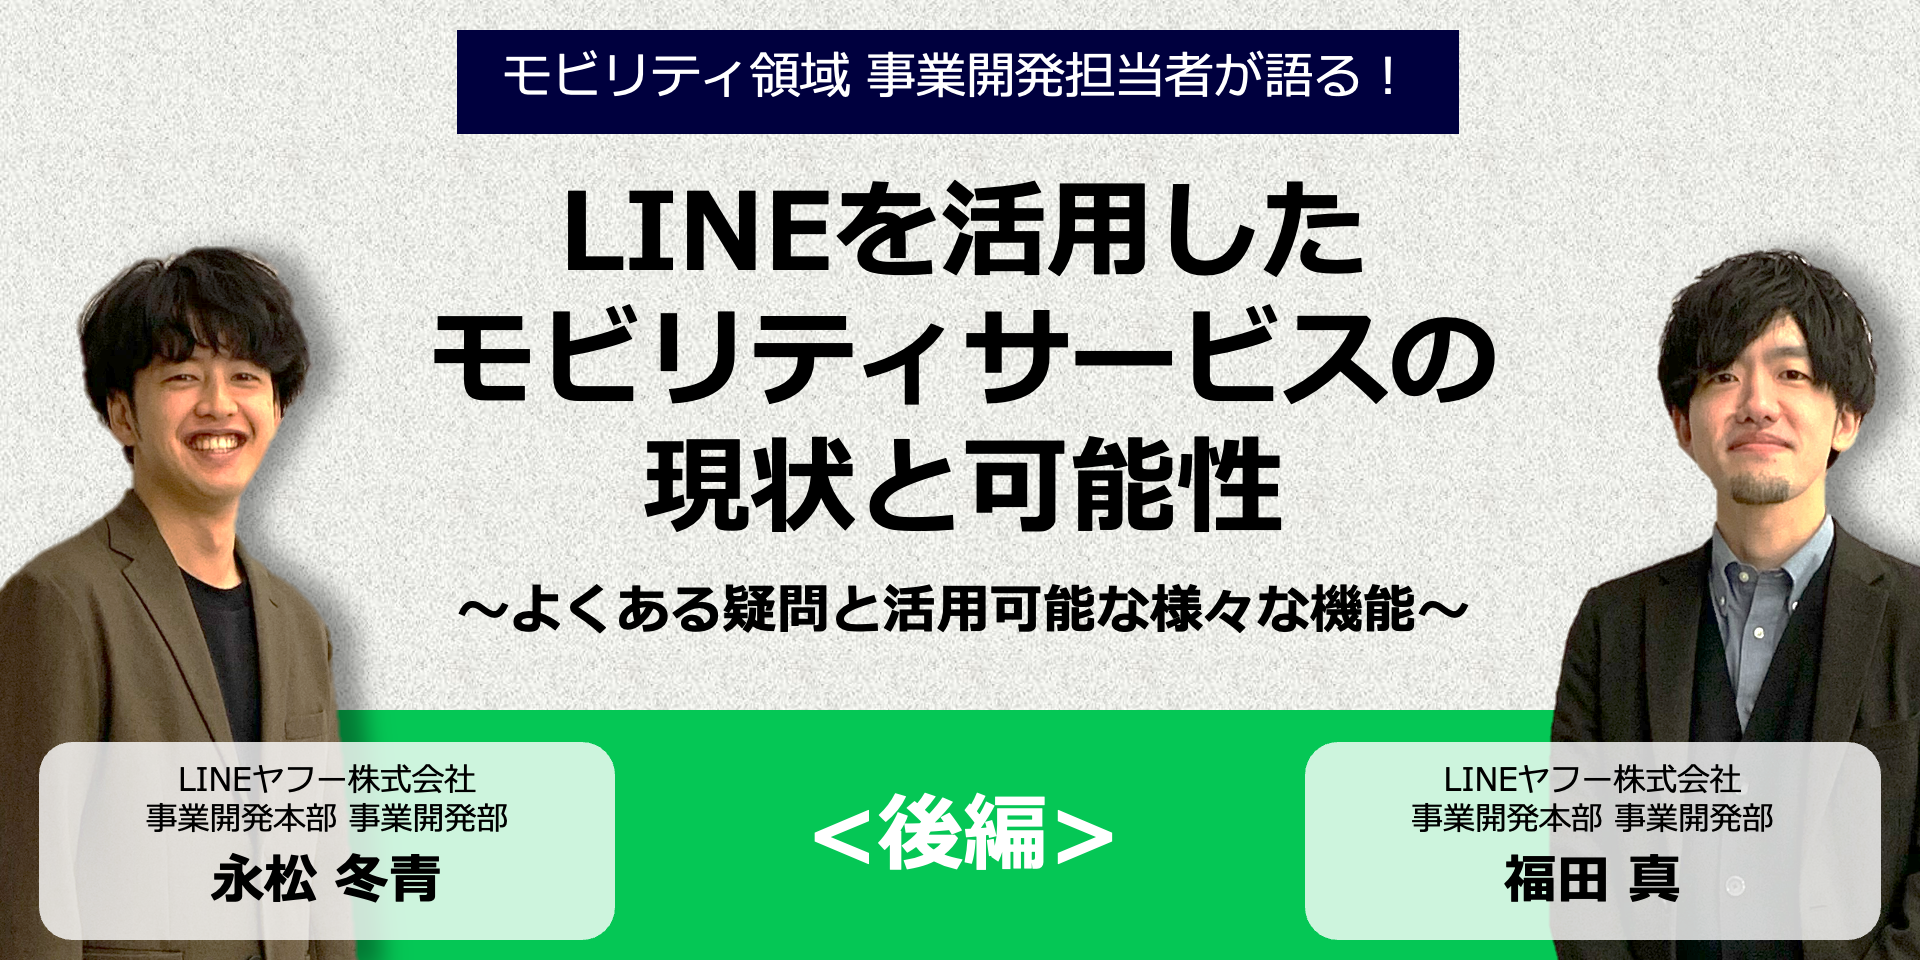 【社内対談/後編】LINEを活用したモビリティサービスの現状と可能性〜LINEプラットフォームがいま注目される理由〜